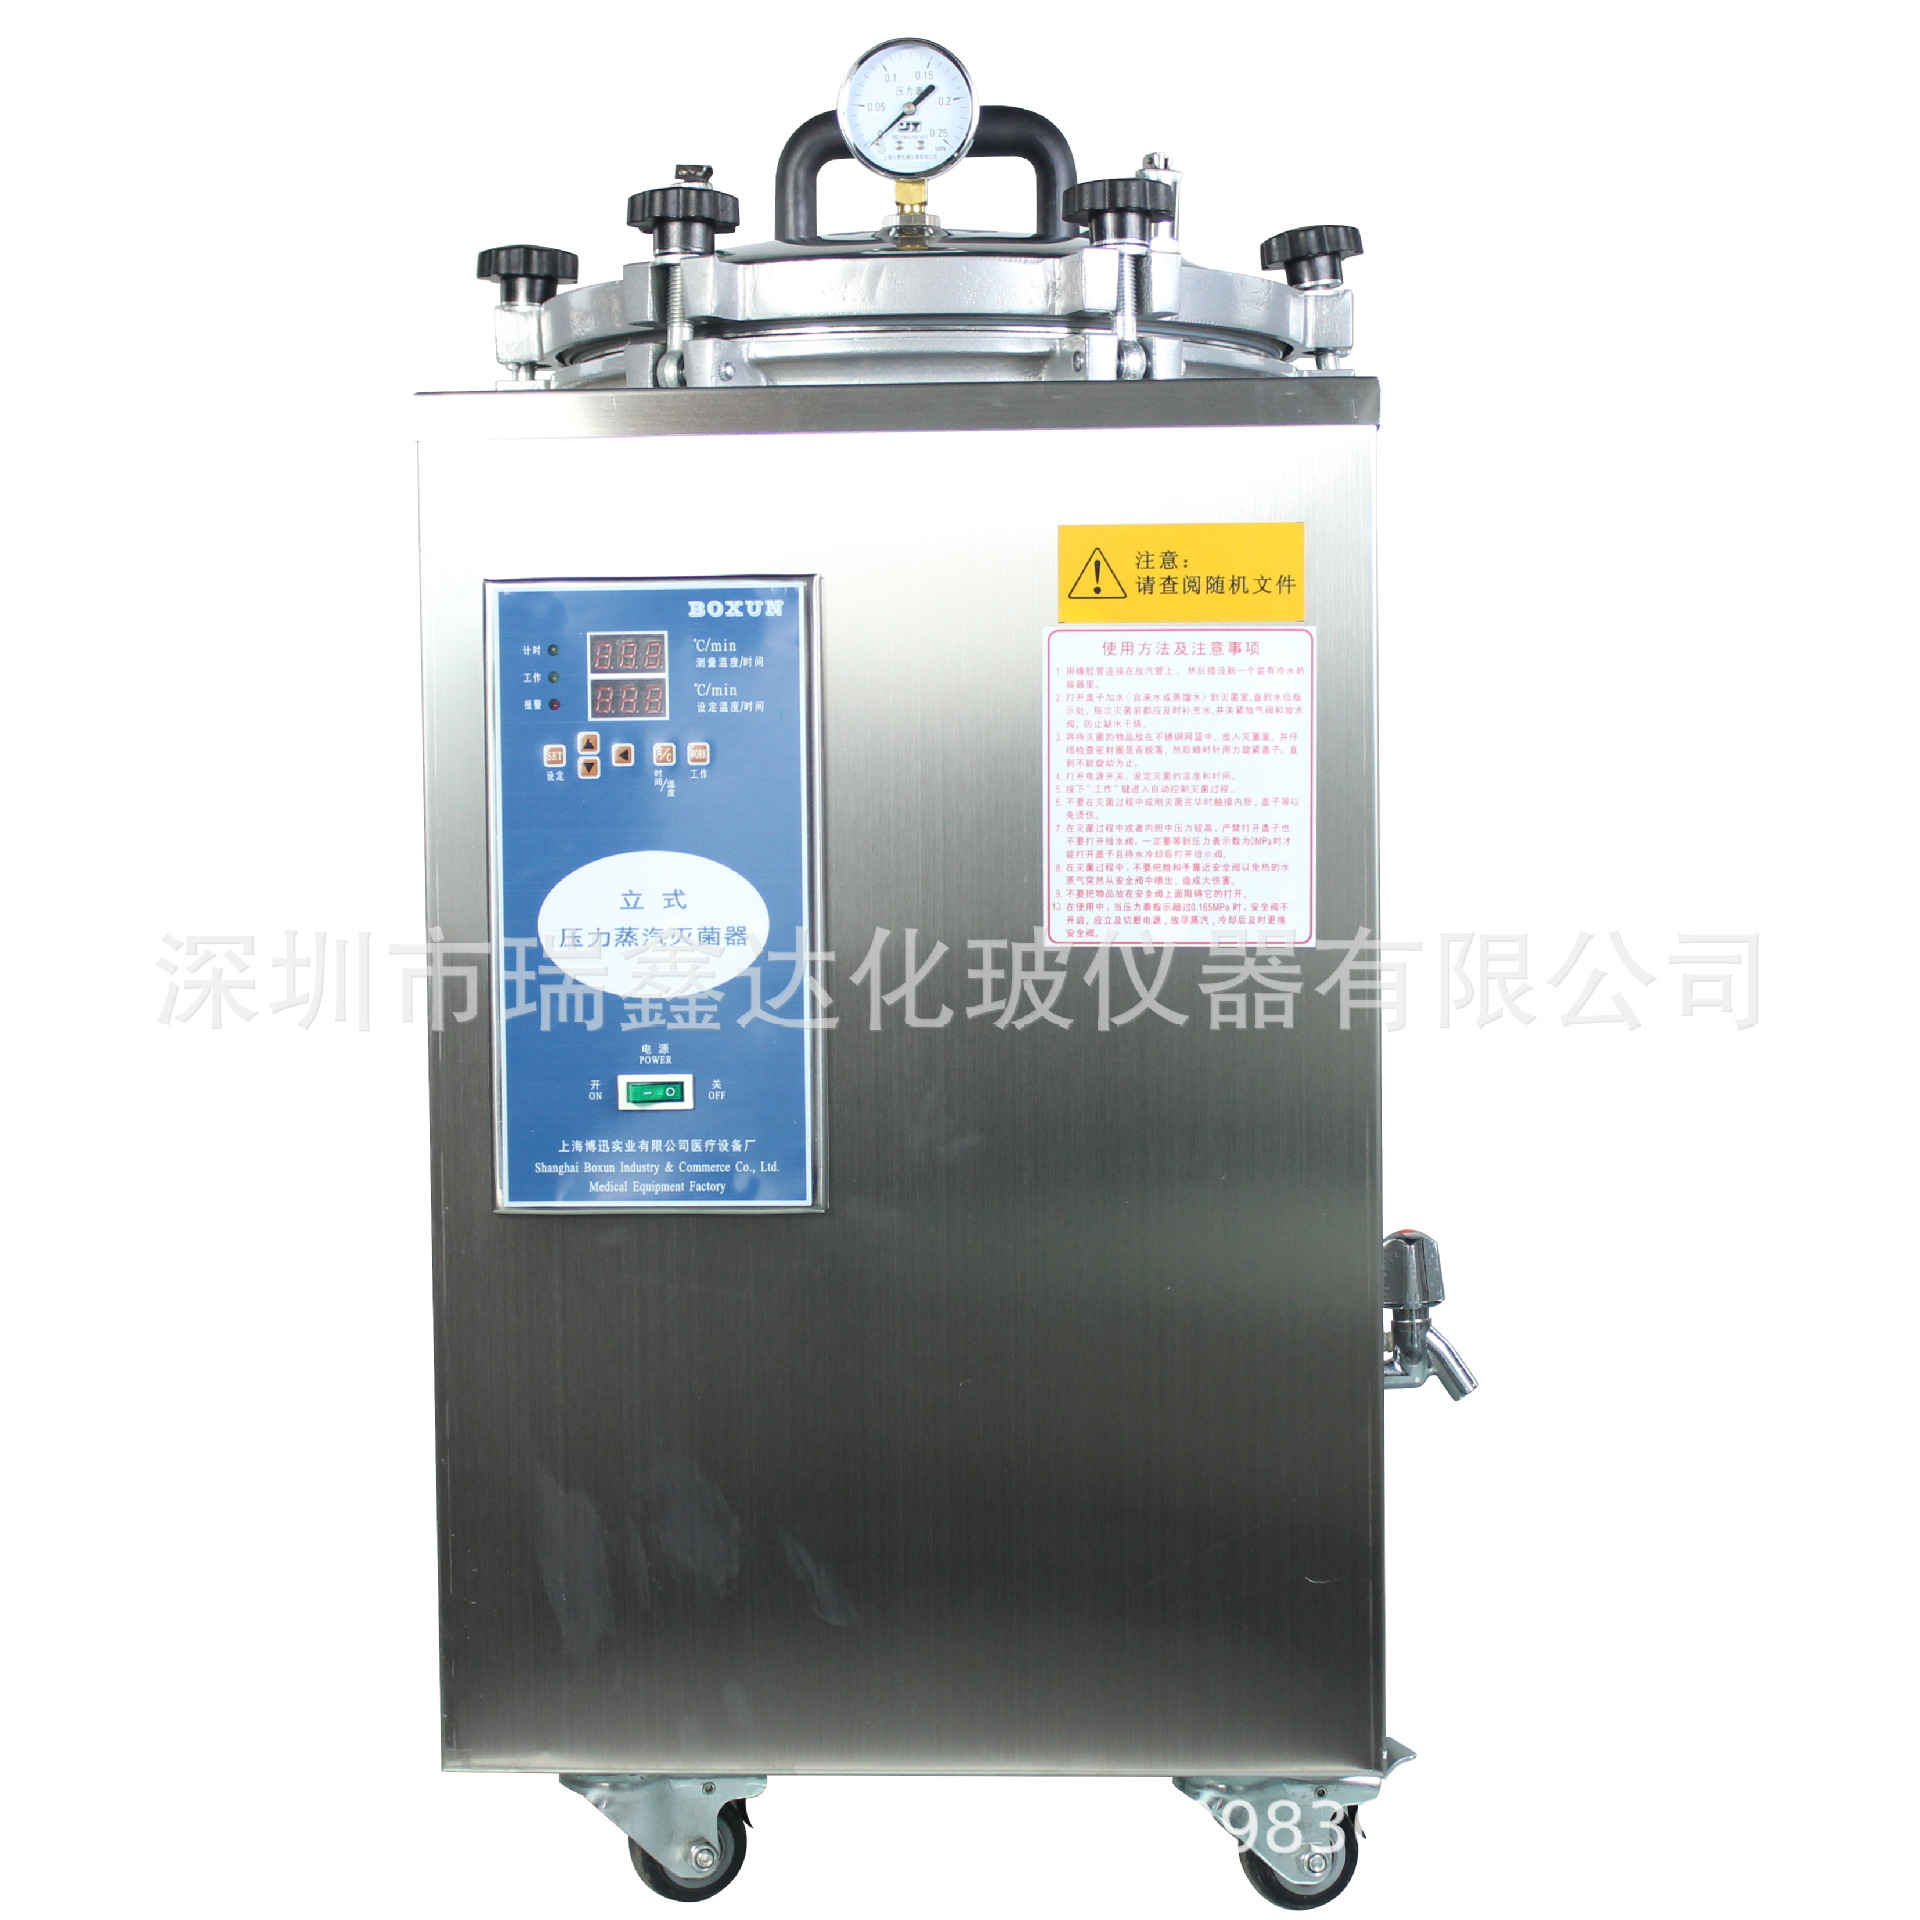 上海博迅BXM-30R立式压力蒸汽消毒器30L 消毒箱深圳实验仪器